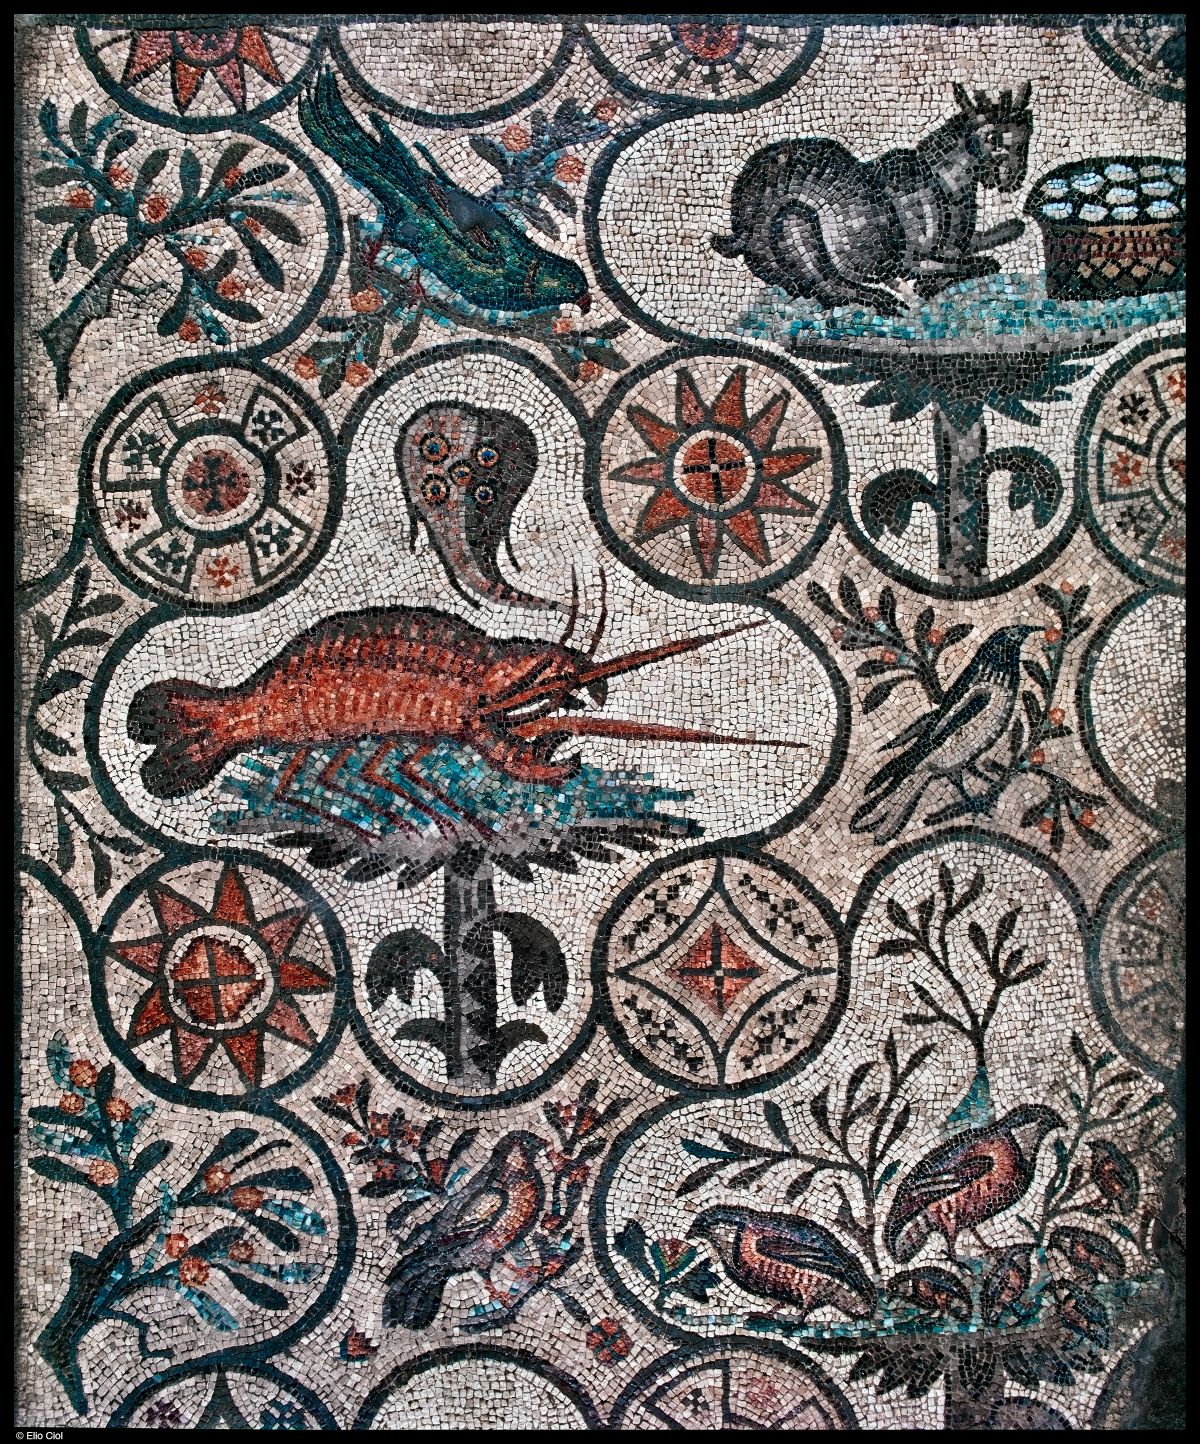 Aragosta e razza nel mosaico dell’aula teodoriana nord ©Elio Ciol